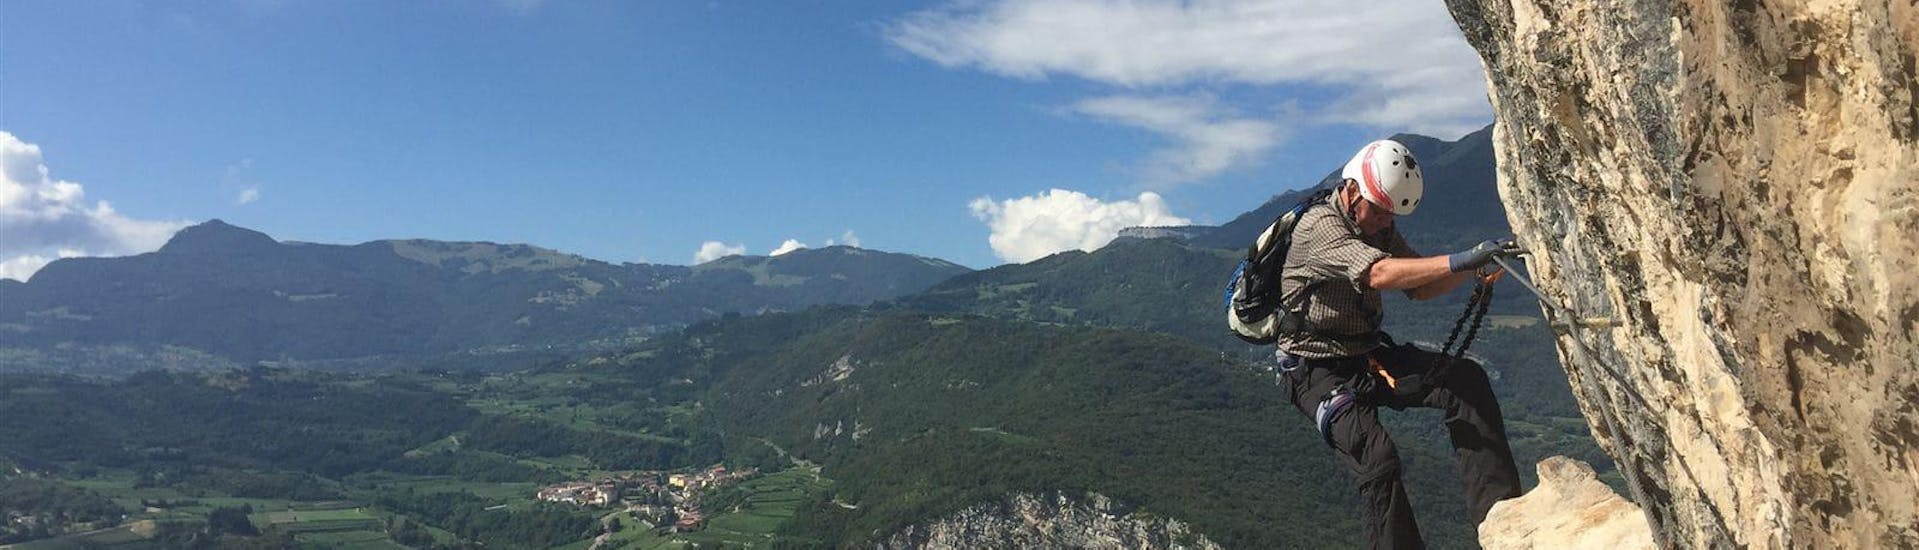 Un participant descend une paroi rocheuse avec une vue imprenable pendant la Via Ferrata Monte Albano - Itinéraire historique avec Mmove - Into Nature Lago di Garda.